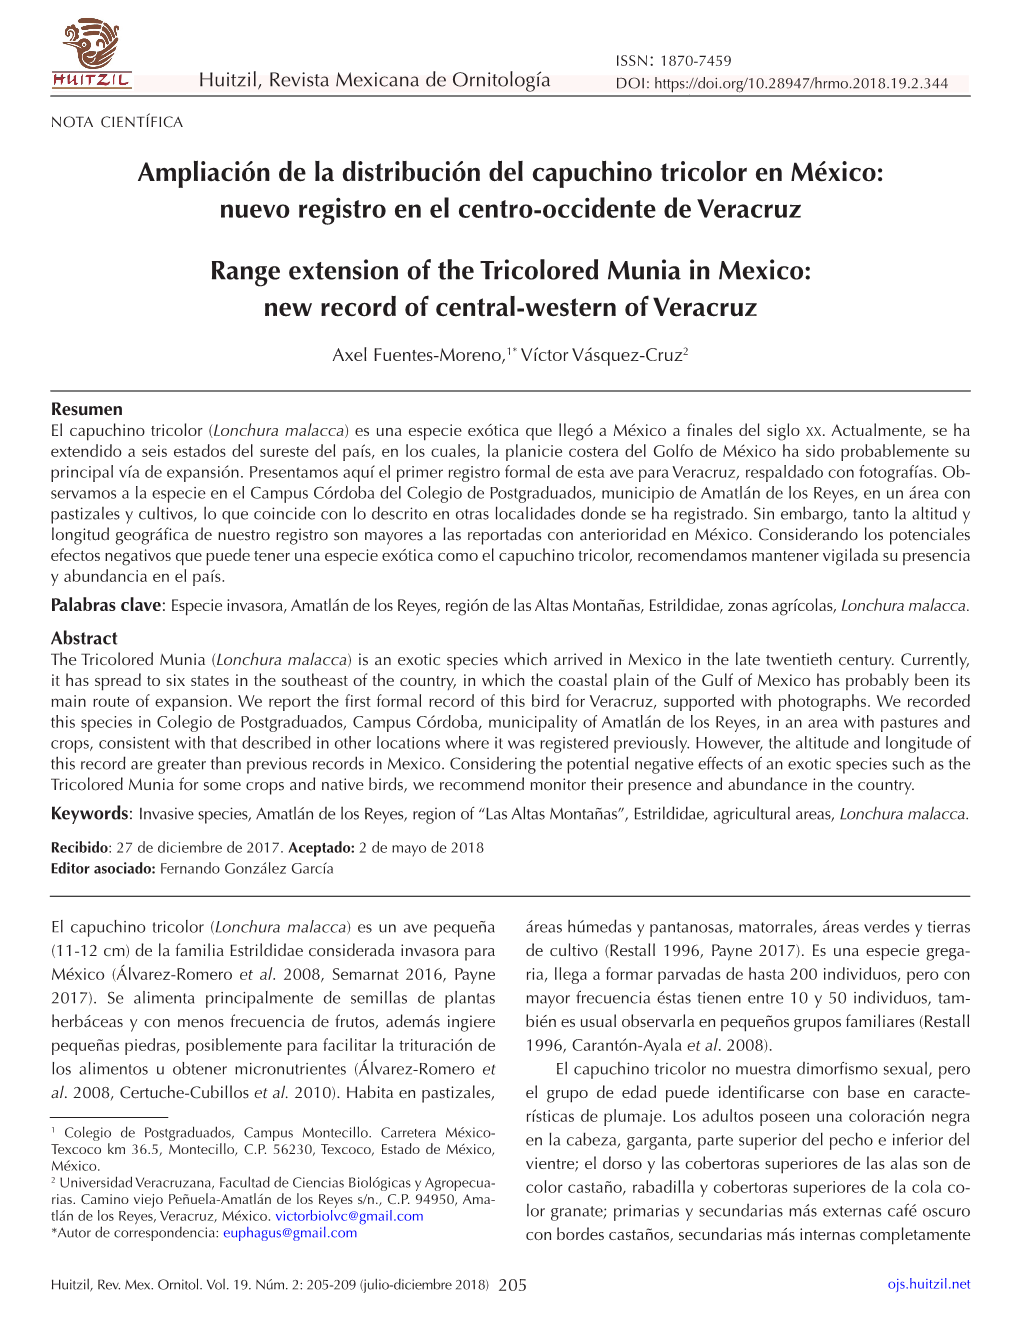 Ampliación De La Distribución Del Capuchino Tricolor En México: Nuevo Registro En El Centro-Occidente De Veracruz